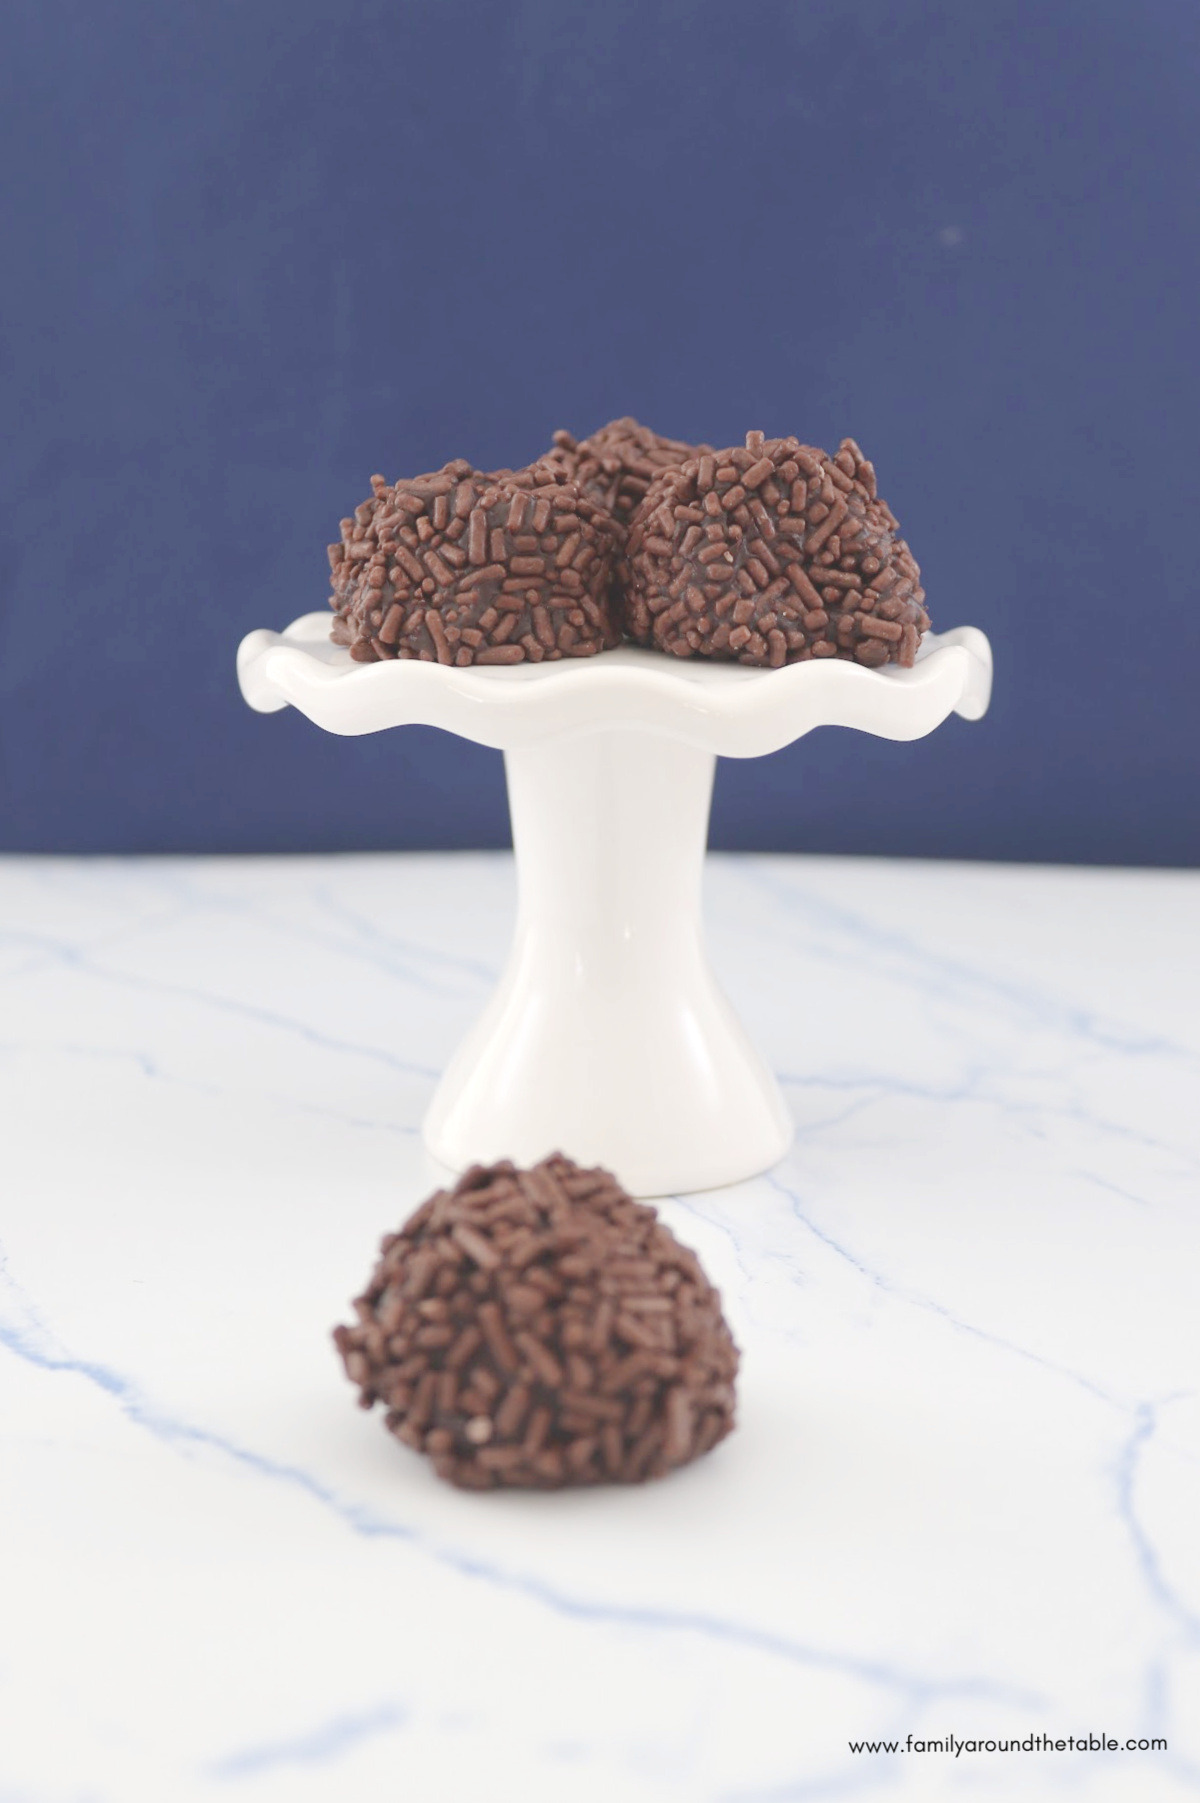 Dark chocolate raspberry almond truffles with sprinkles on a white pedestal plate.